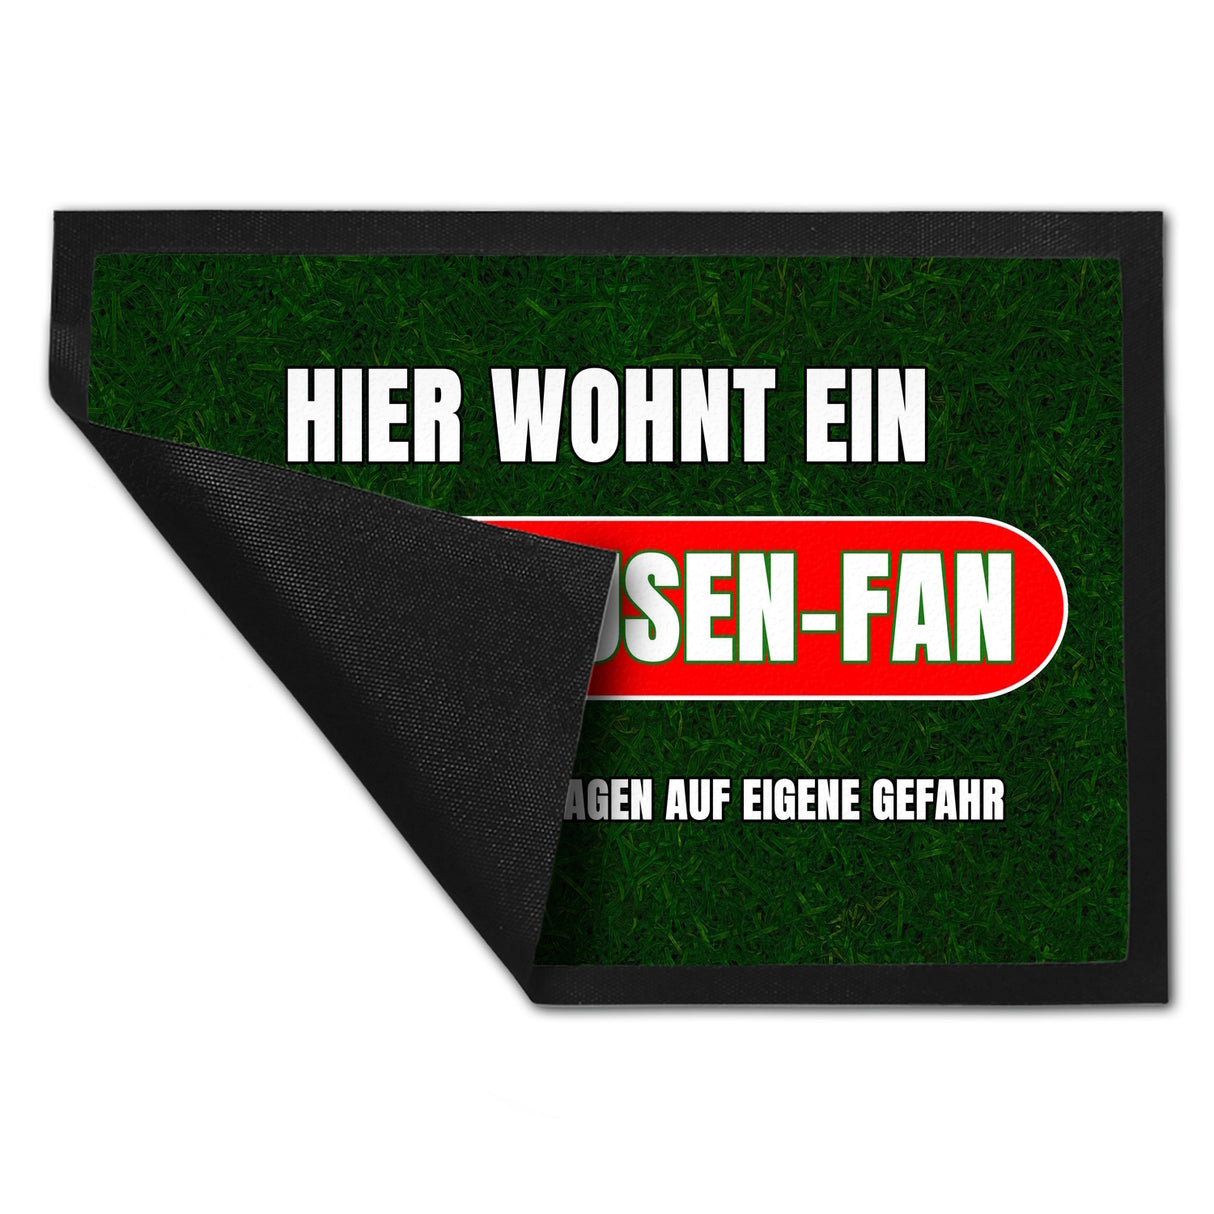 Hier wohnt ein Oberhausen-Fan Fußmatte in 35x50 cm mit Rasenmotiv